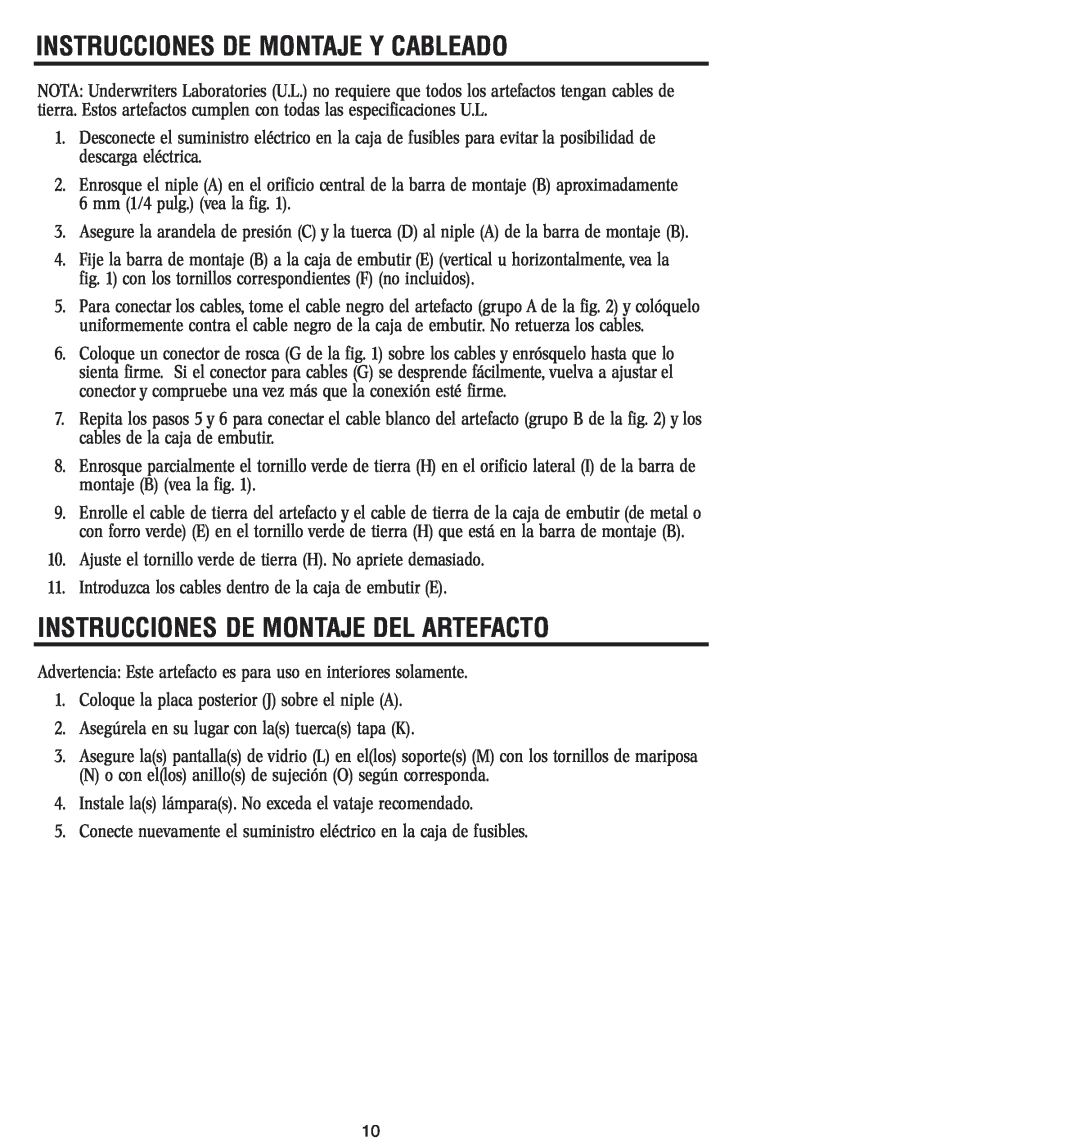 Westinghouse W-045 owner manual Instrucciones De Montaje Y Cableado, Instrucciones De Montaje Del Artefacto 